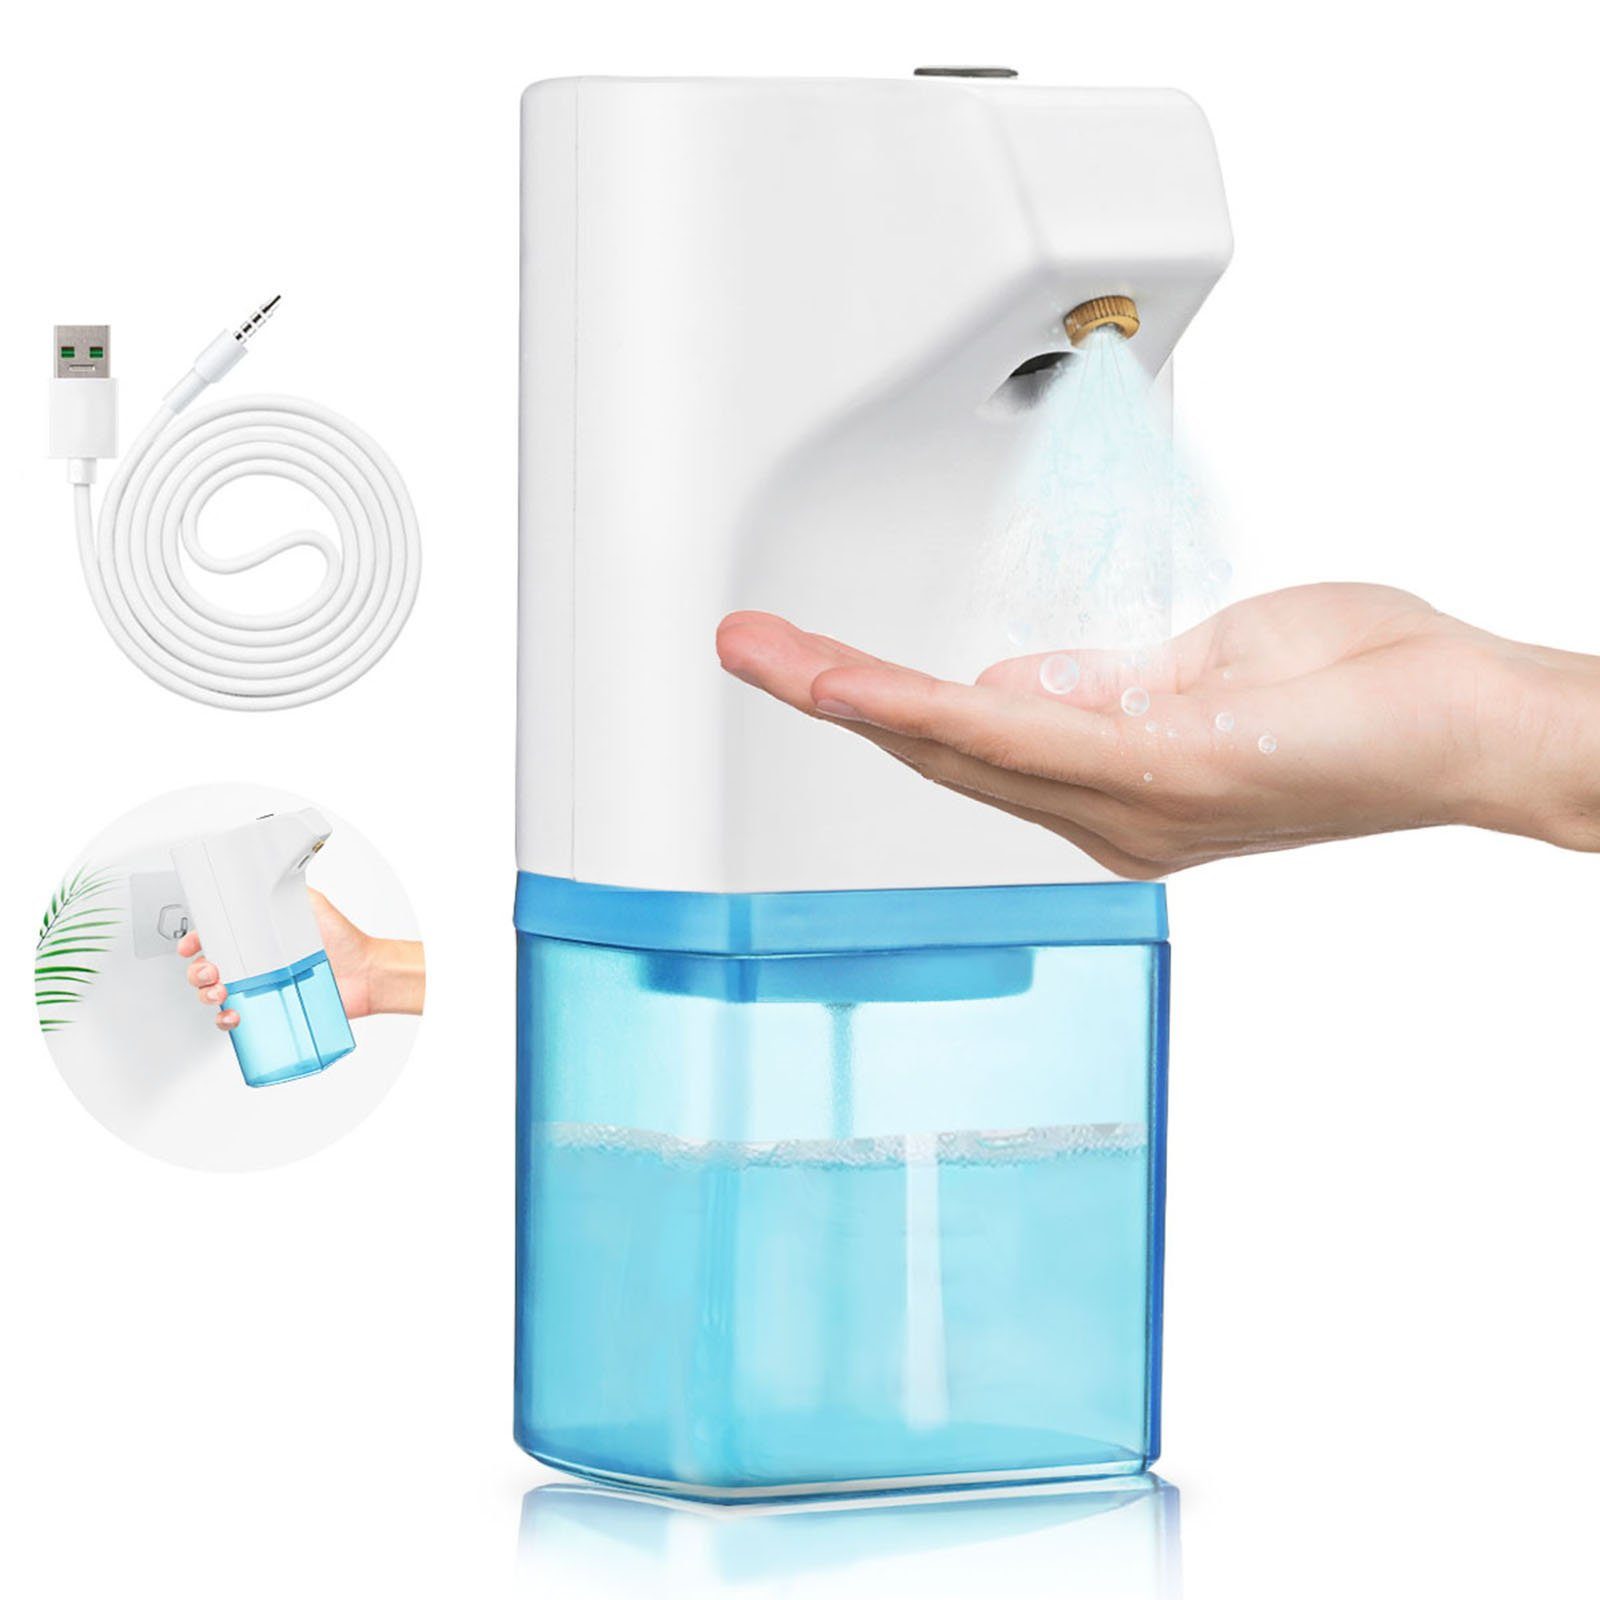 NASUM Desinfektionsmittelspender Automatischer Seifenspender: Hygiene leicht gemacht!, Automatische Desinfektionsmittel-ausgabe, hygienisch